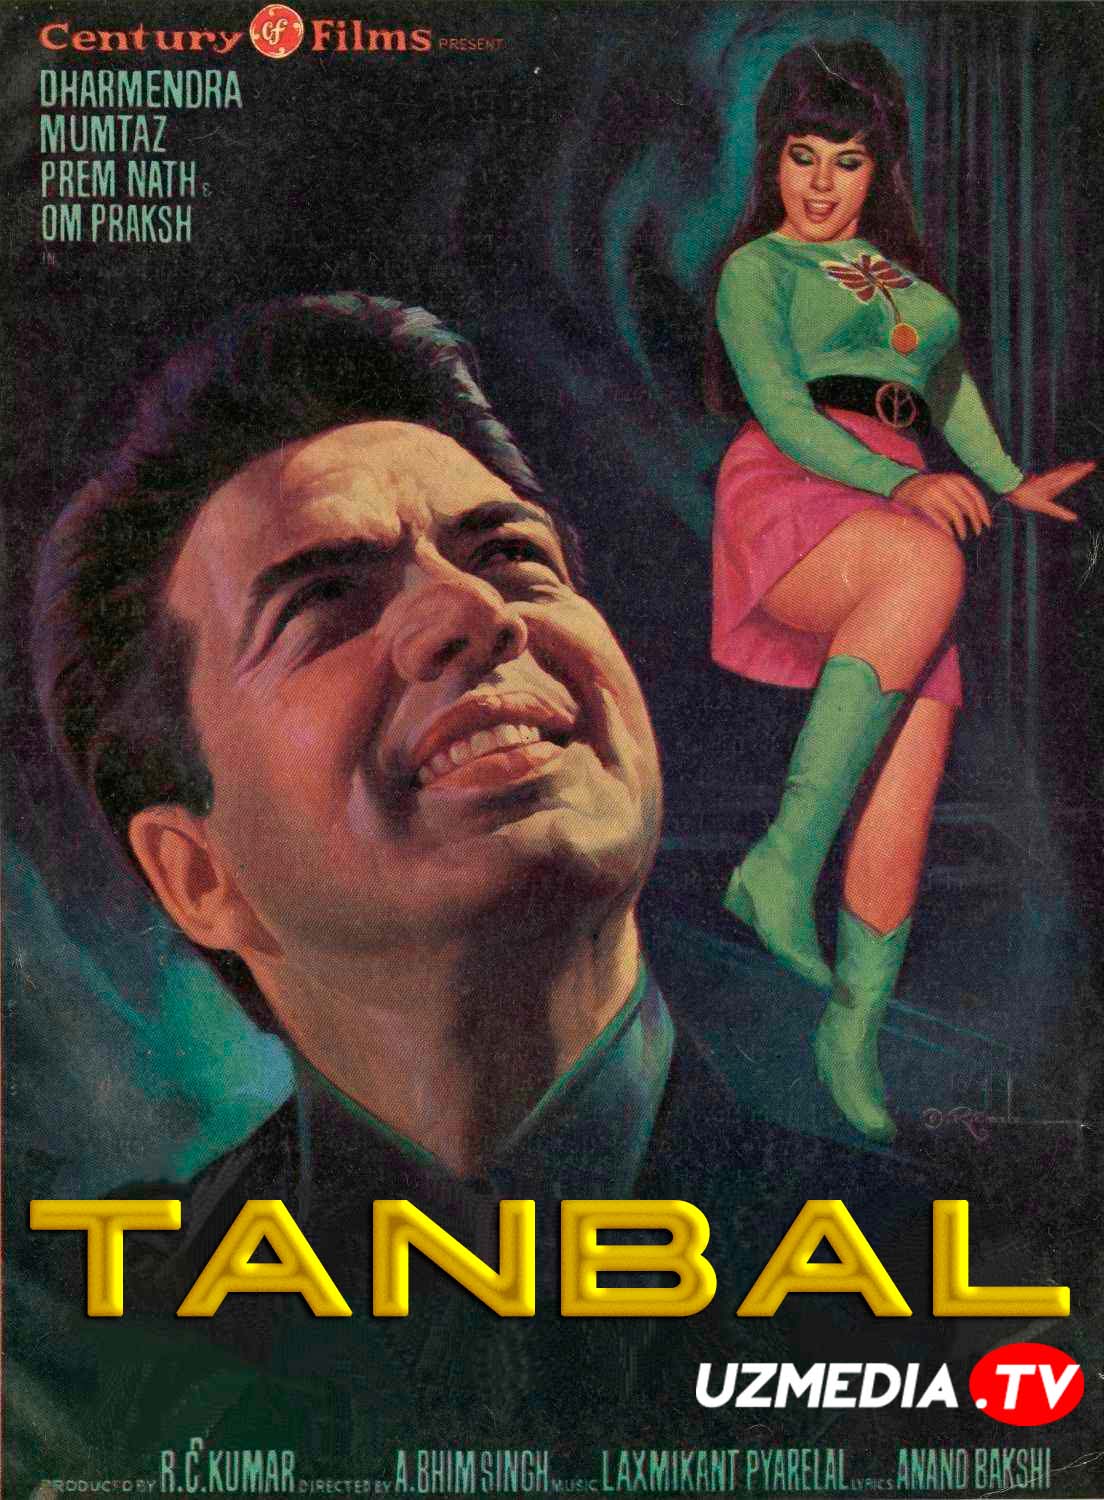 Tanbal / Ishyoqmas / Dangasa / Bekorchi Hind kino Uzbek tilida O'zbekcha 1973 tarjima kino Full HD skachat